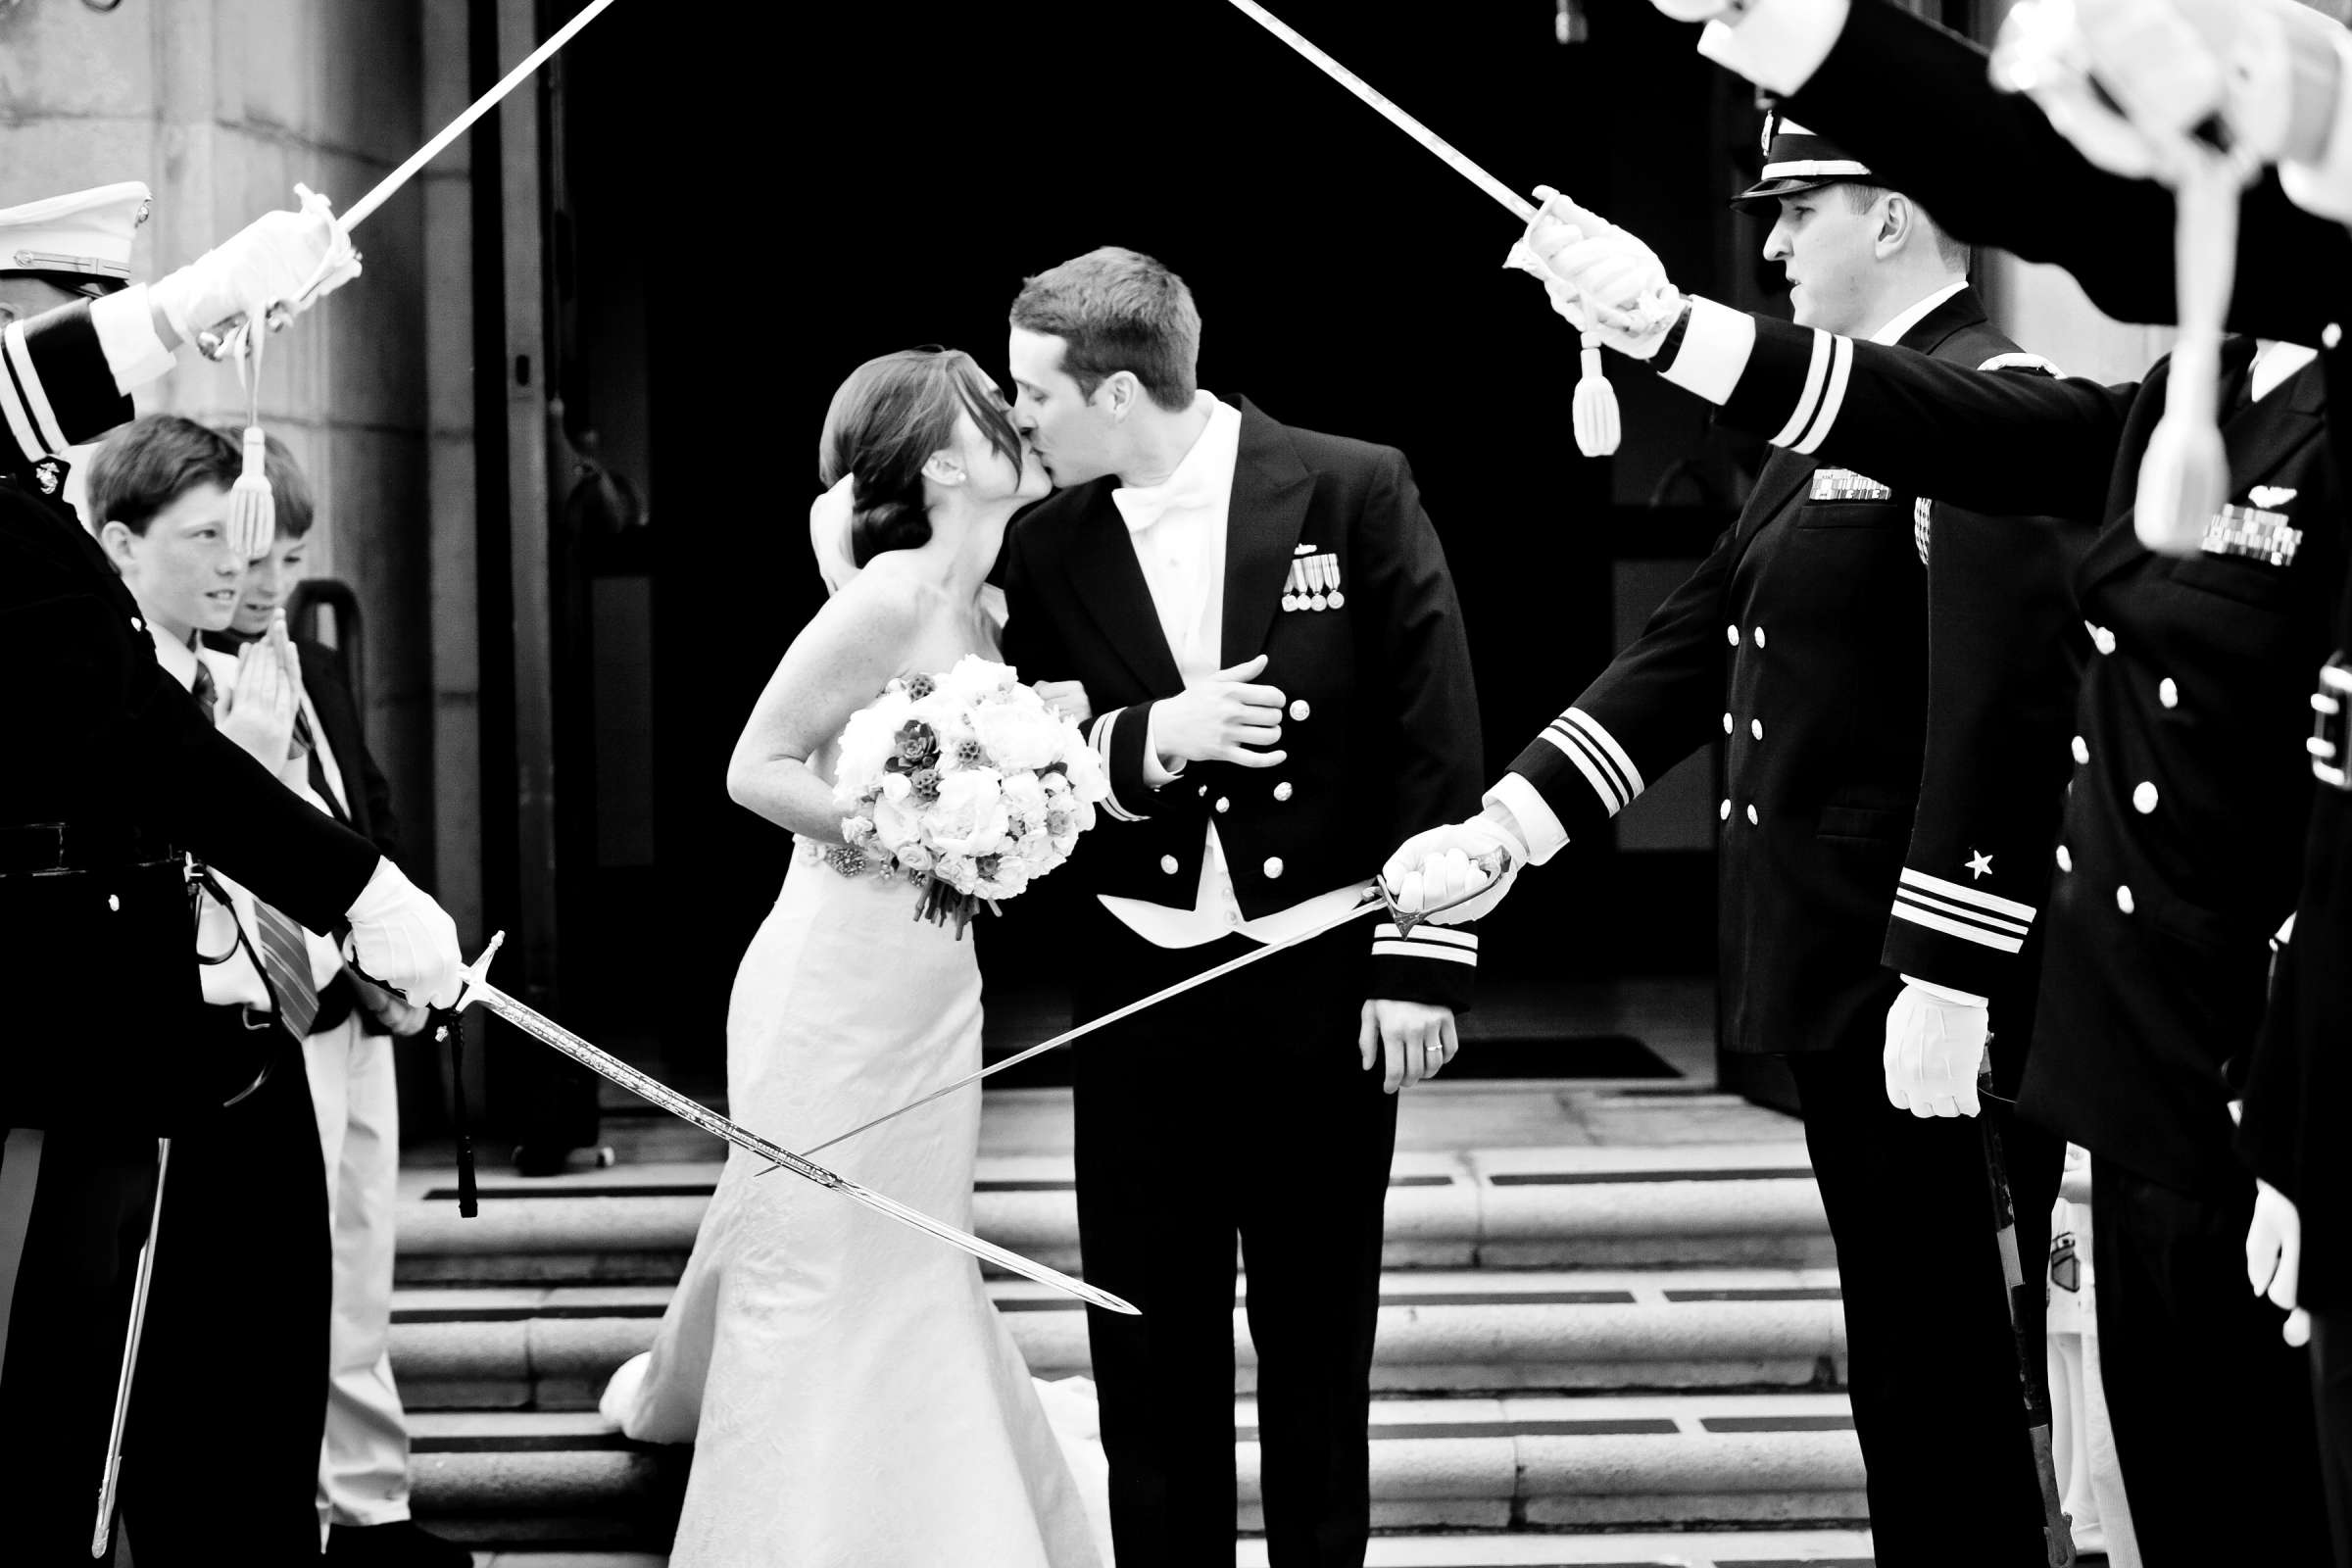 Admiral Kidd Club Wedding coordinated by I Do Weddings, Ashley and Rhett Wedding Photo #358414 by True Photography